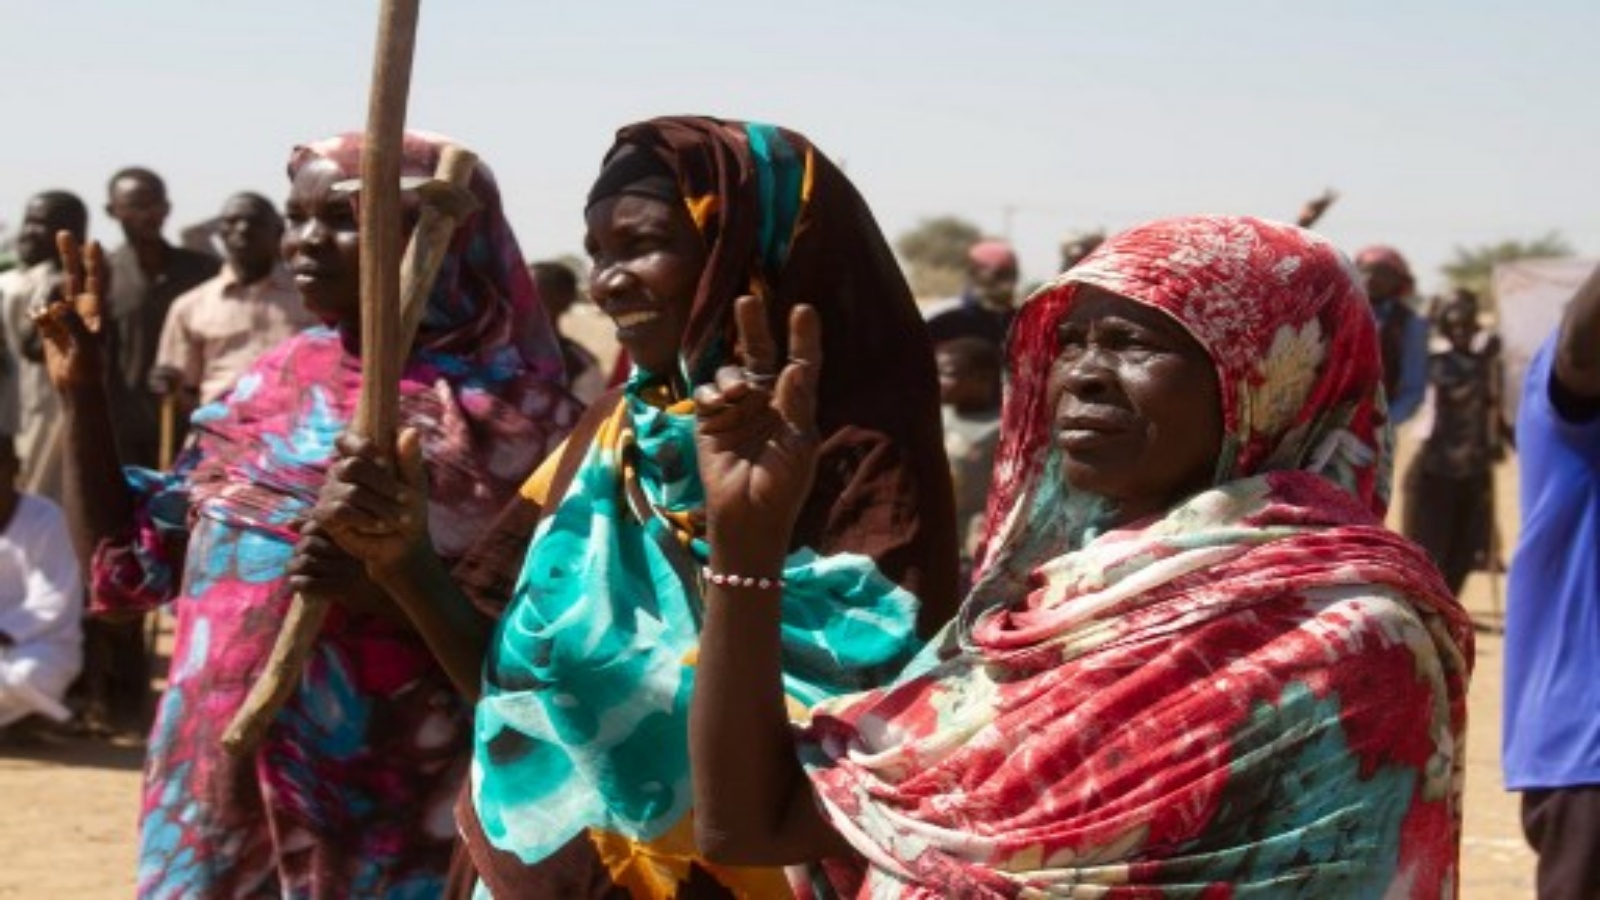 نساء سودانيات يشاركن في اعتصام للاحتجاج على انتهاء ولاية بعثة الأمم المتحدة والاتحاد الأفريقي لحفظ السلام (يوناميد) ، في مخيم كلمة للنازحين في نيالا ، عاصمة جنوب دارفور ، في 30 ديسمبر 2020. وافق مجلس الأمن التابع للأمم المتحدة على إنهاء مهمة اليوناميد طويلة الأمد لحفظ السلام في دارفور التي ينتهي تفويضها في 31 ديسمبر